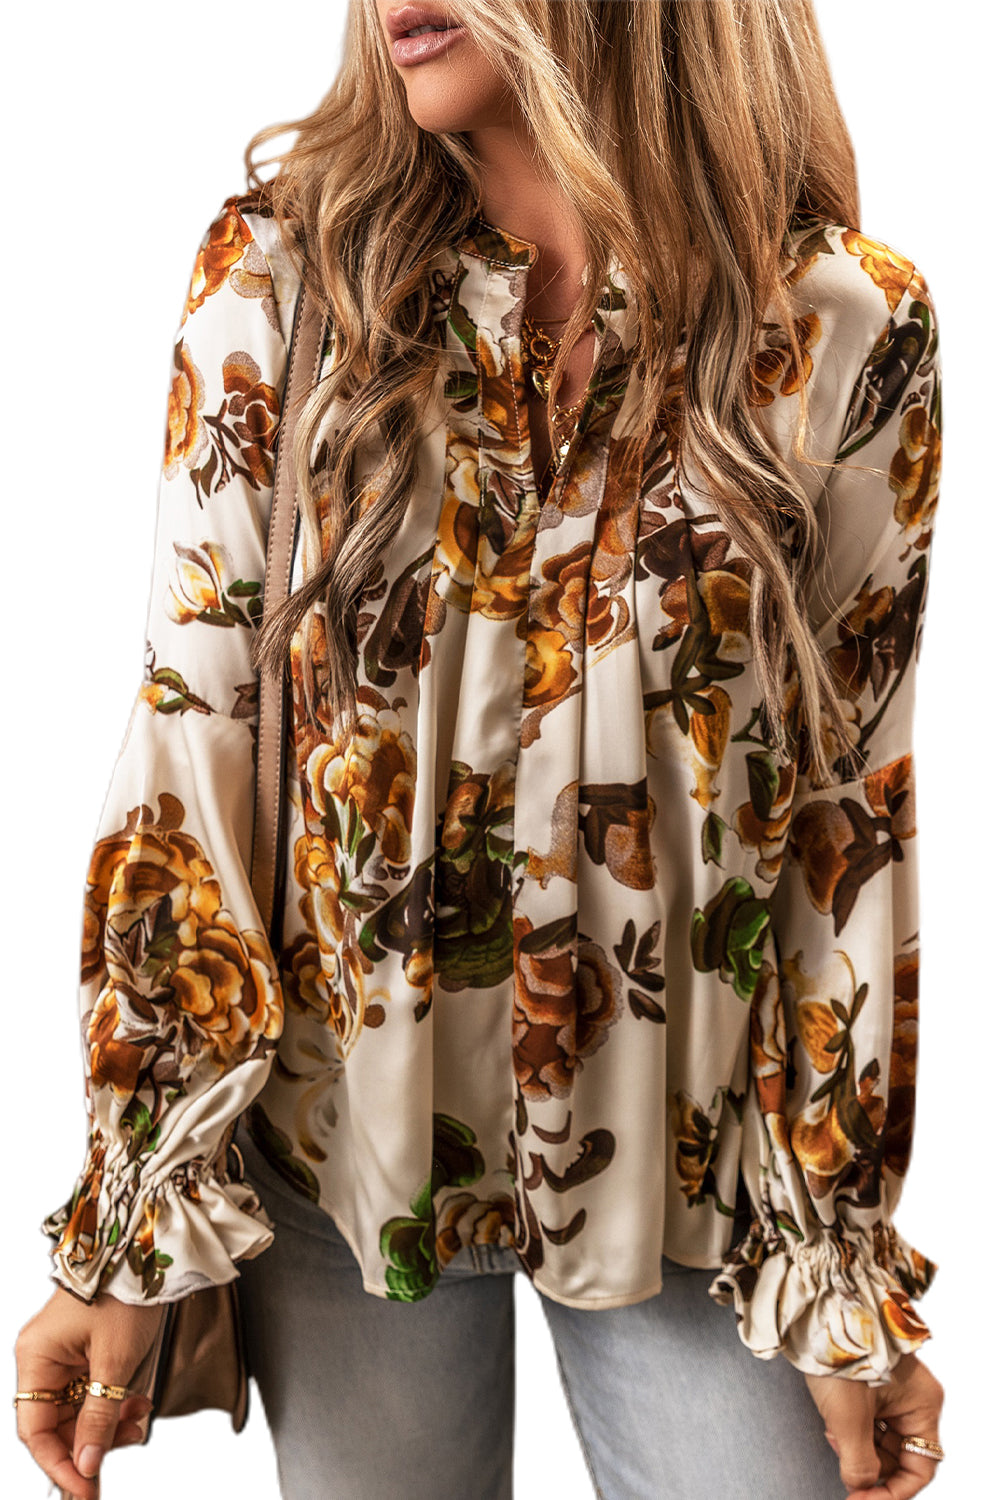 Splendida camicetta floreale con maniche a balza e collo diviso color albicocca